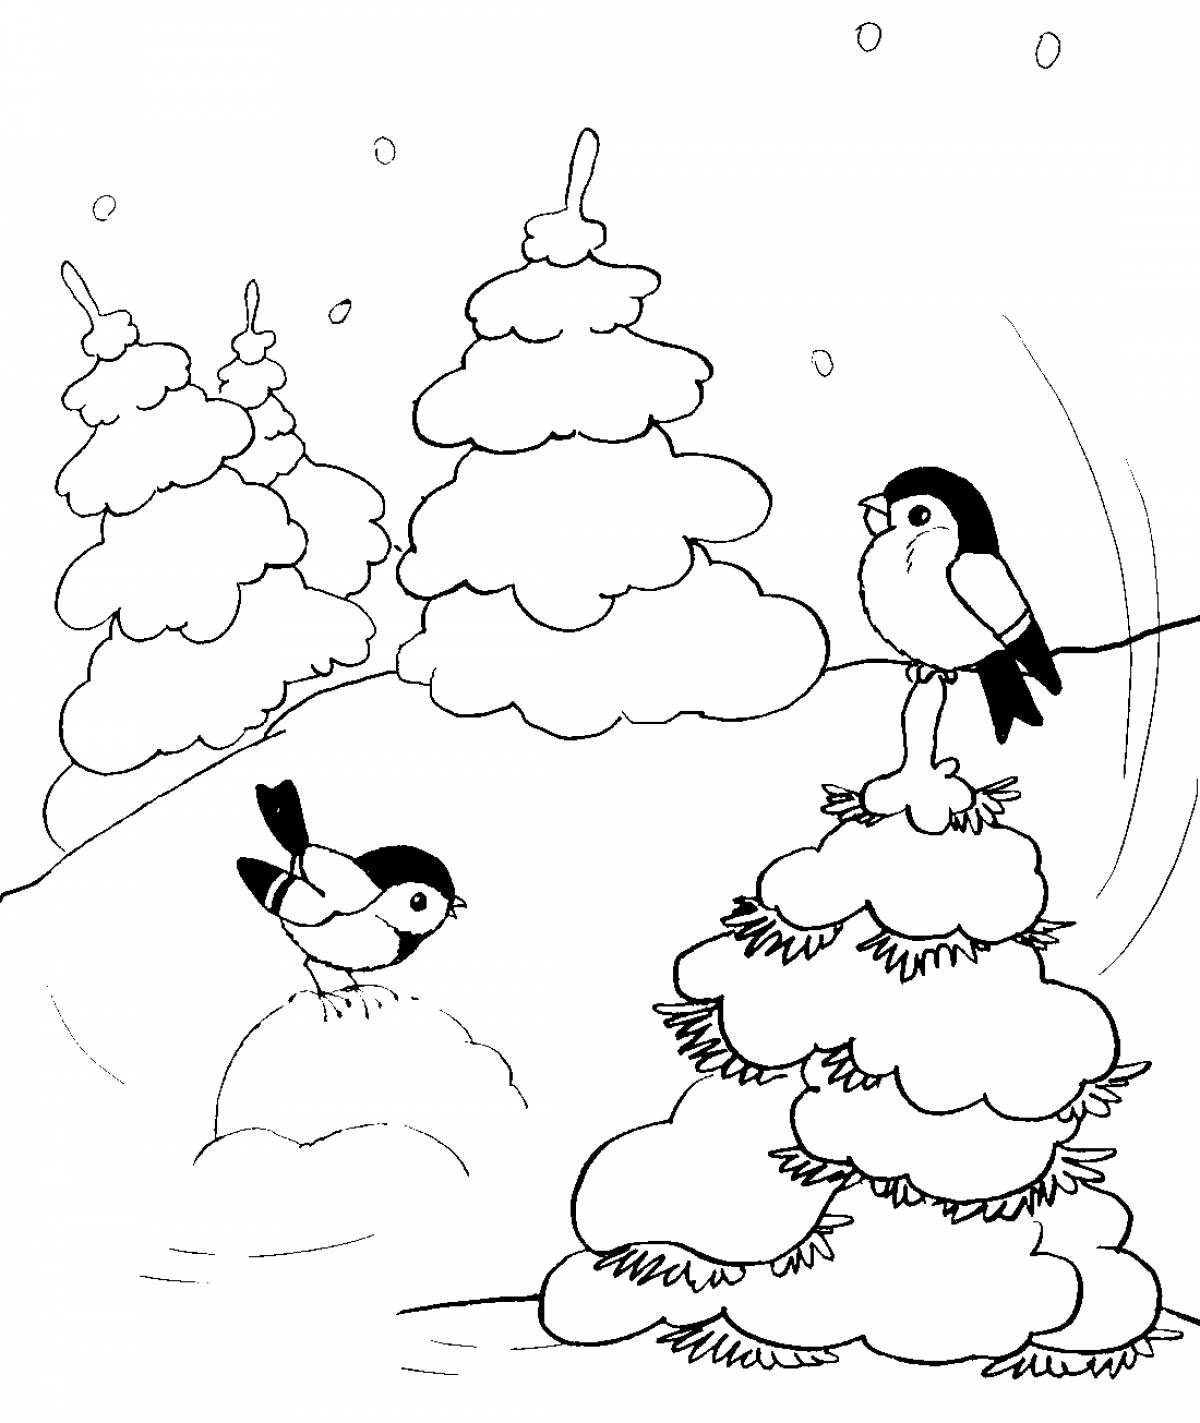 Птицы в зимнем лесу